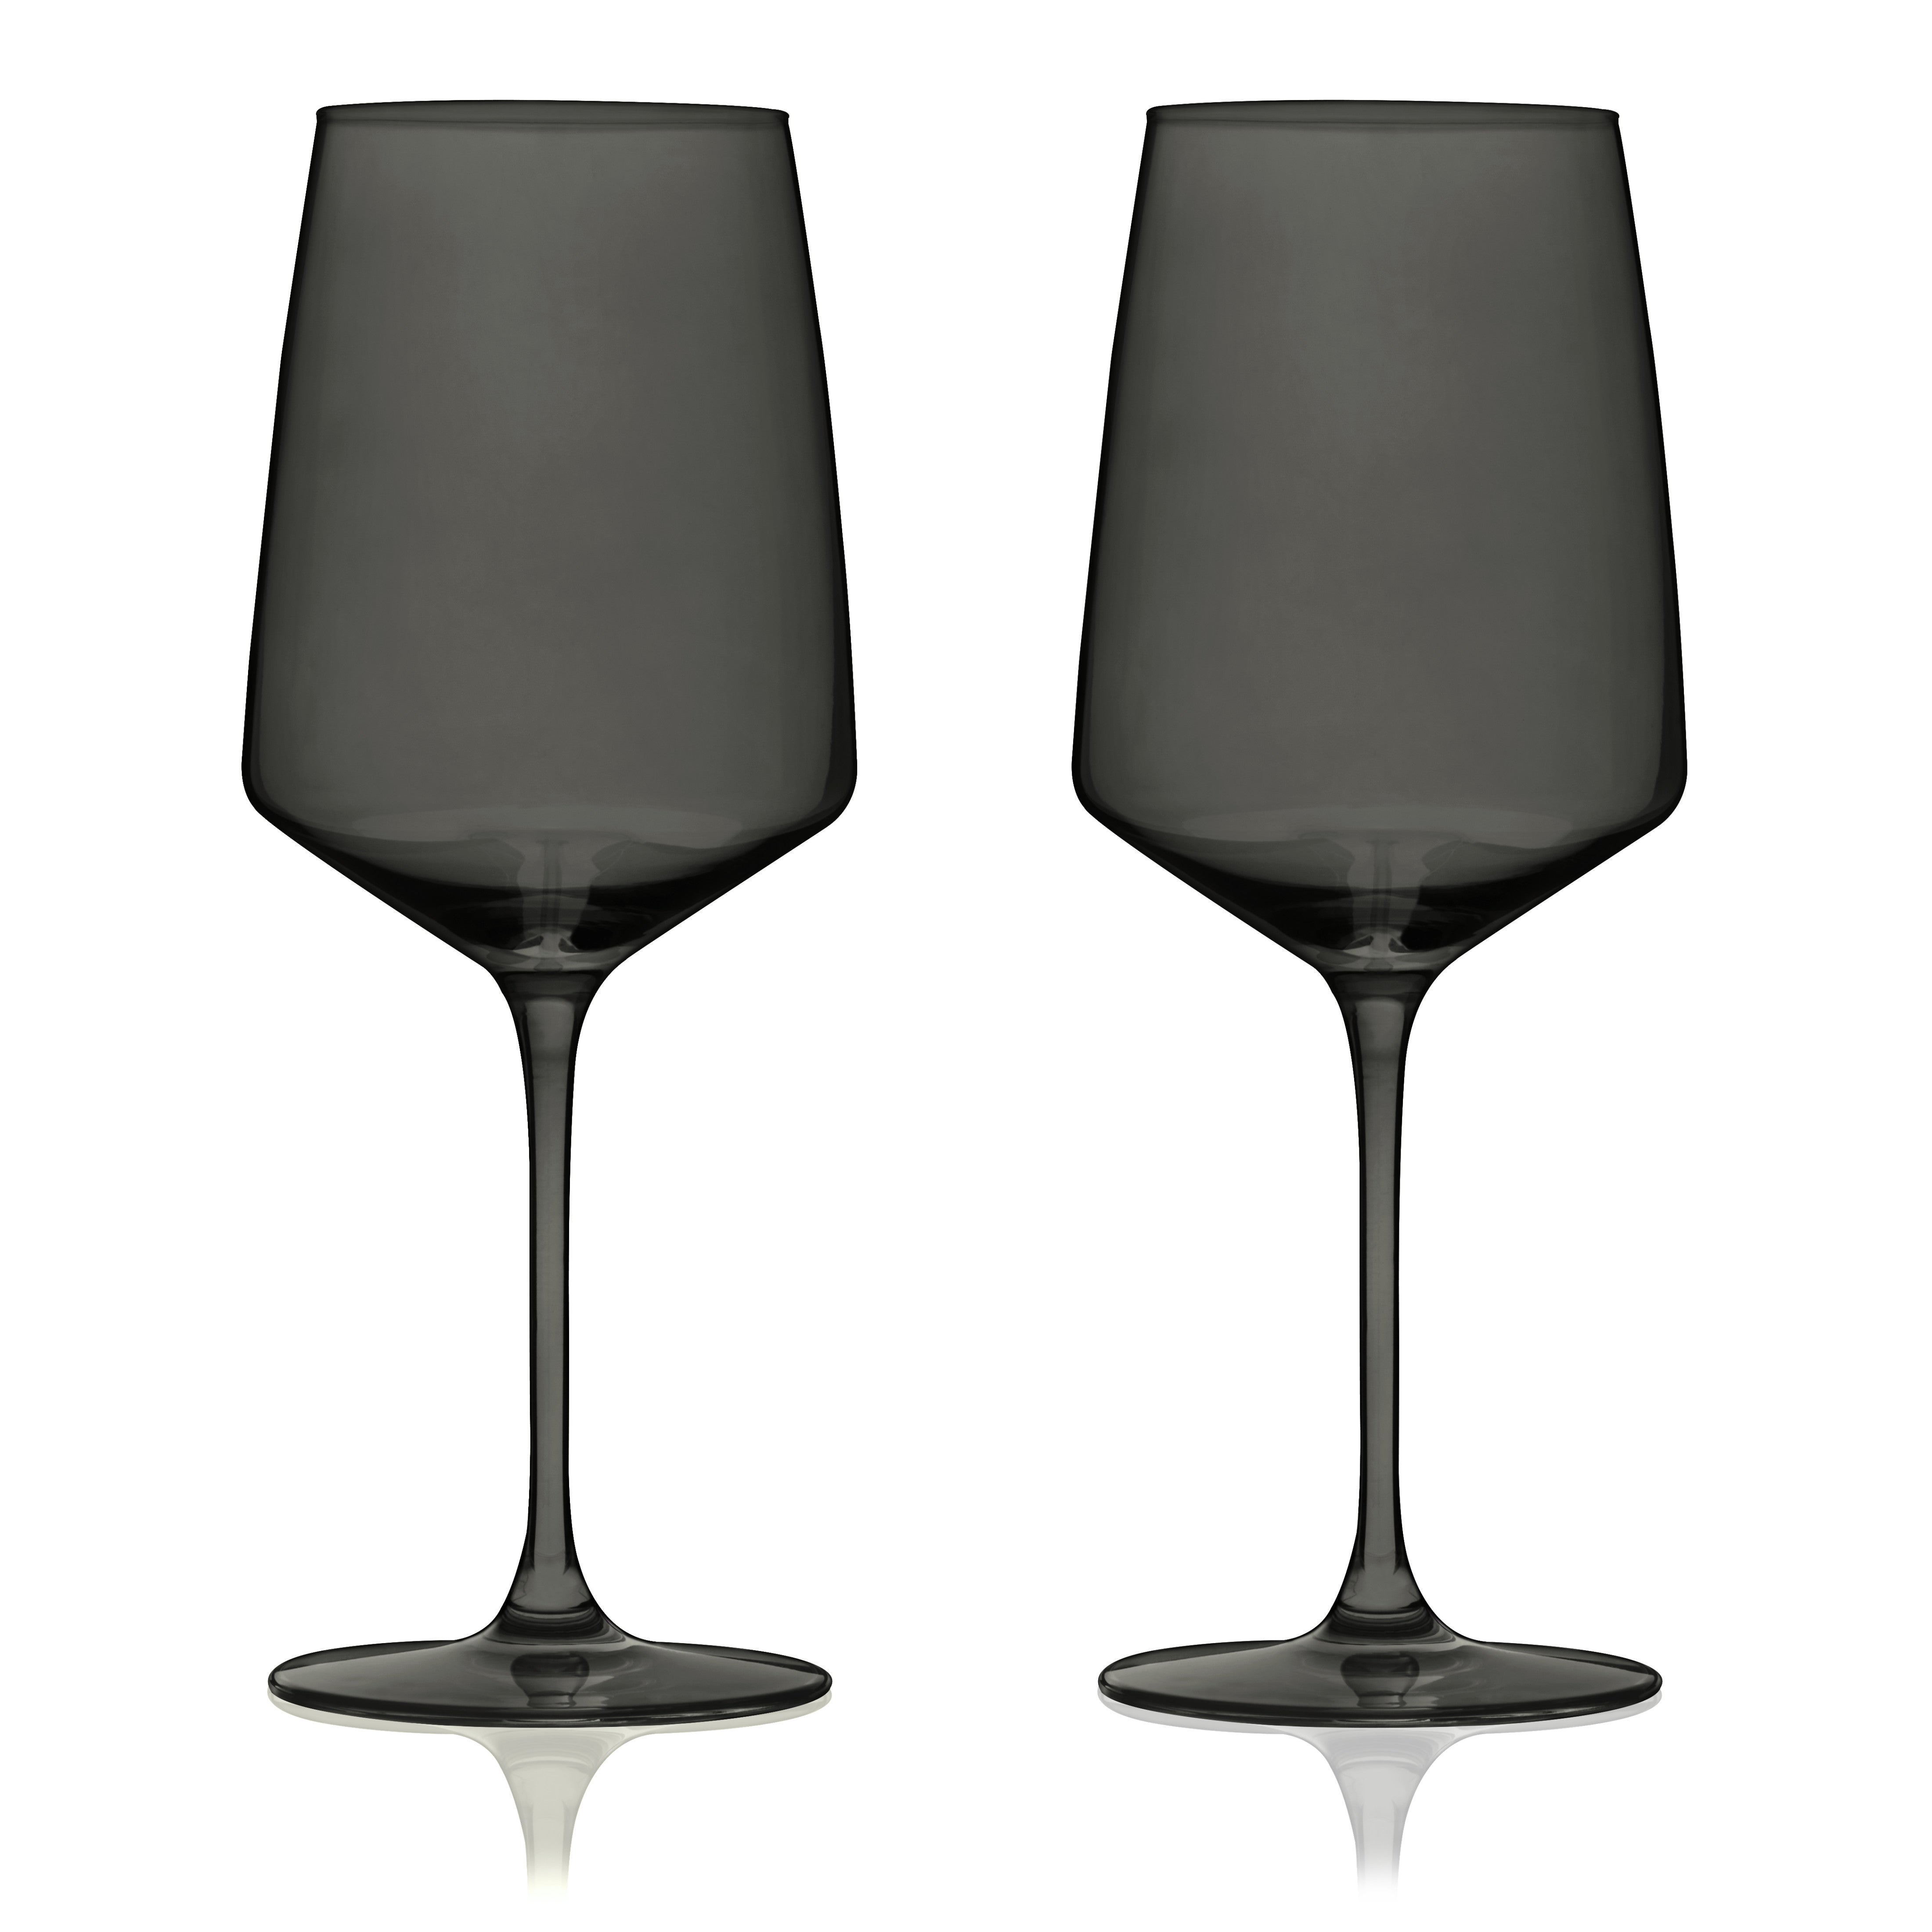 Viski Reserve Colored Wine Glasses, Set of 2, Smoke